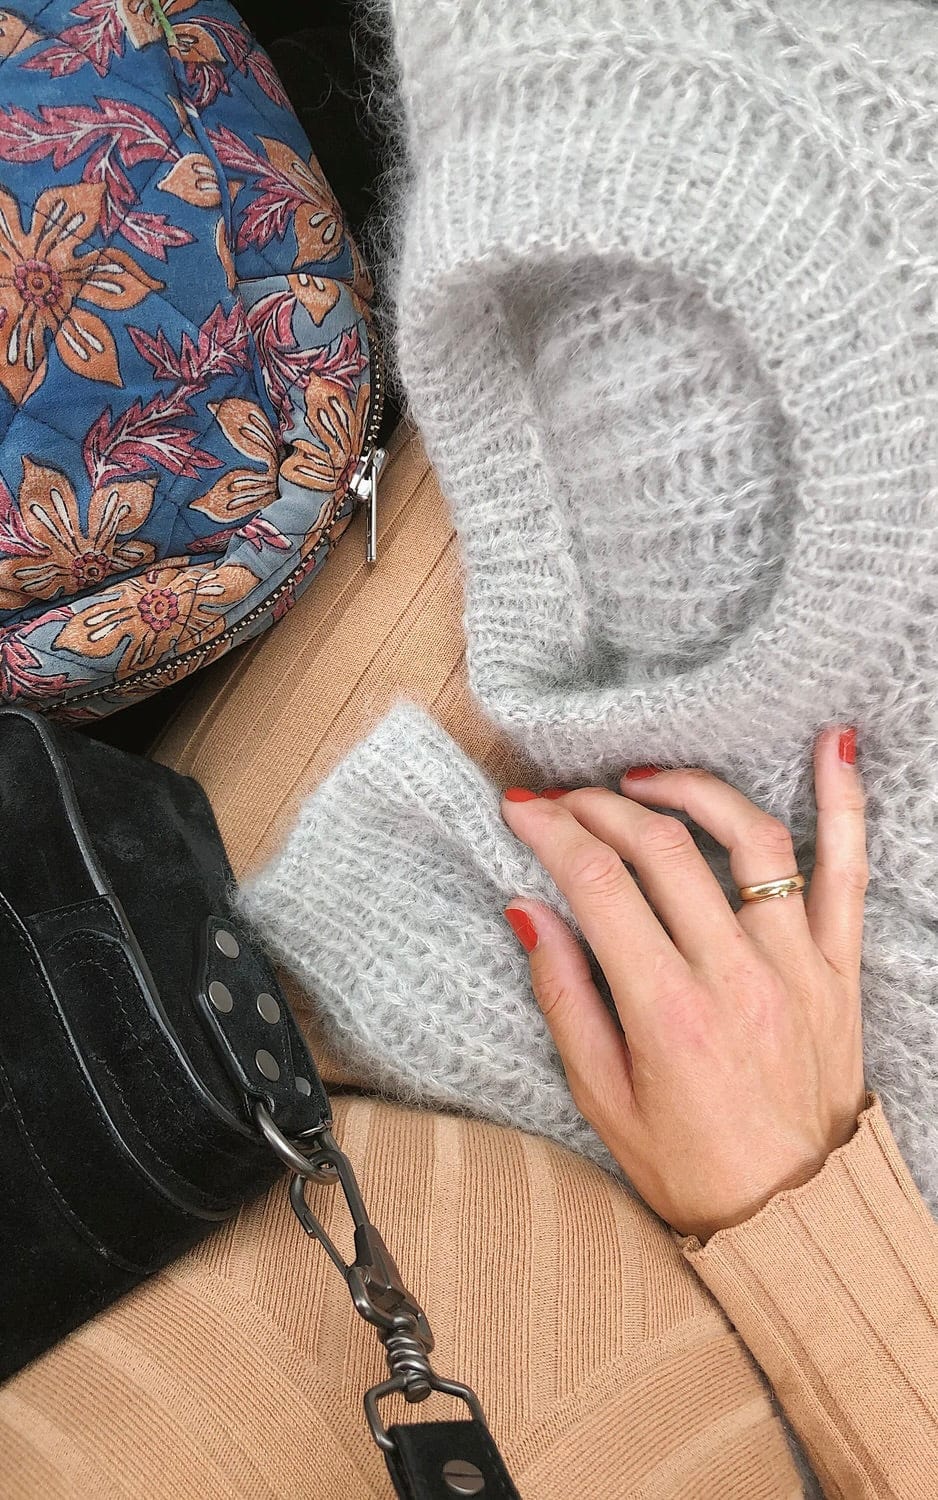 September Sweater - TYNN SILK MOHAIR - Strickset von PETITE KNIT jetzt online kaufen bei OONIQUE